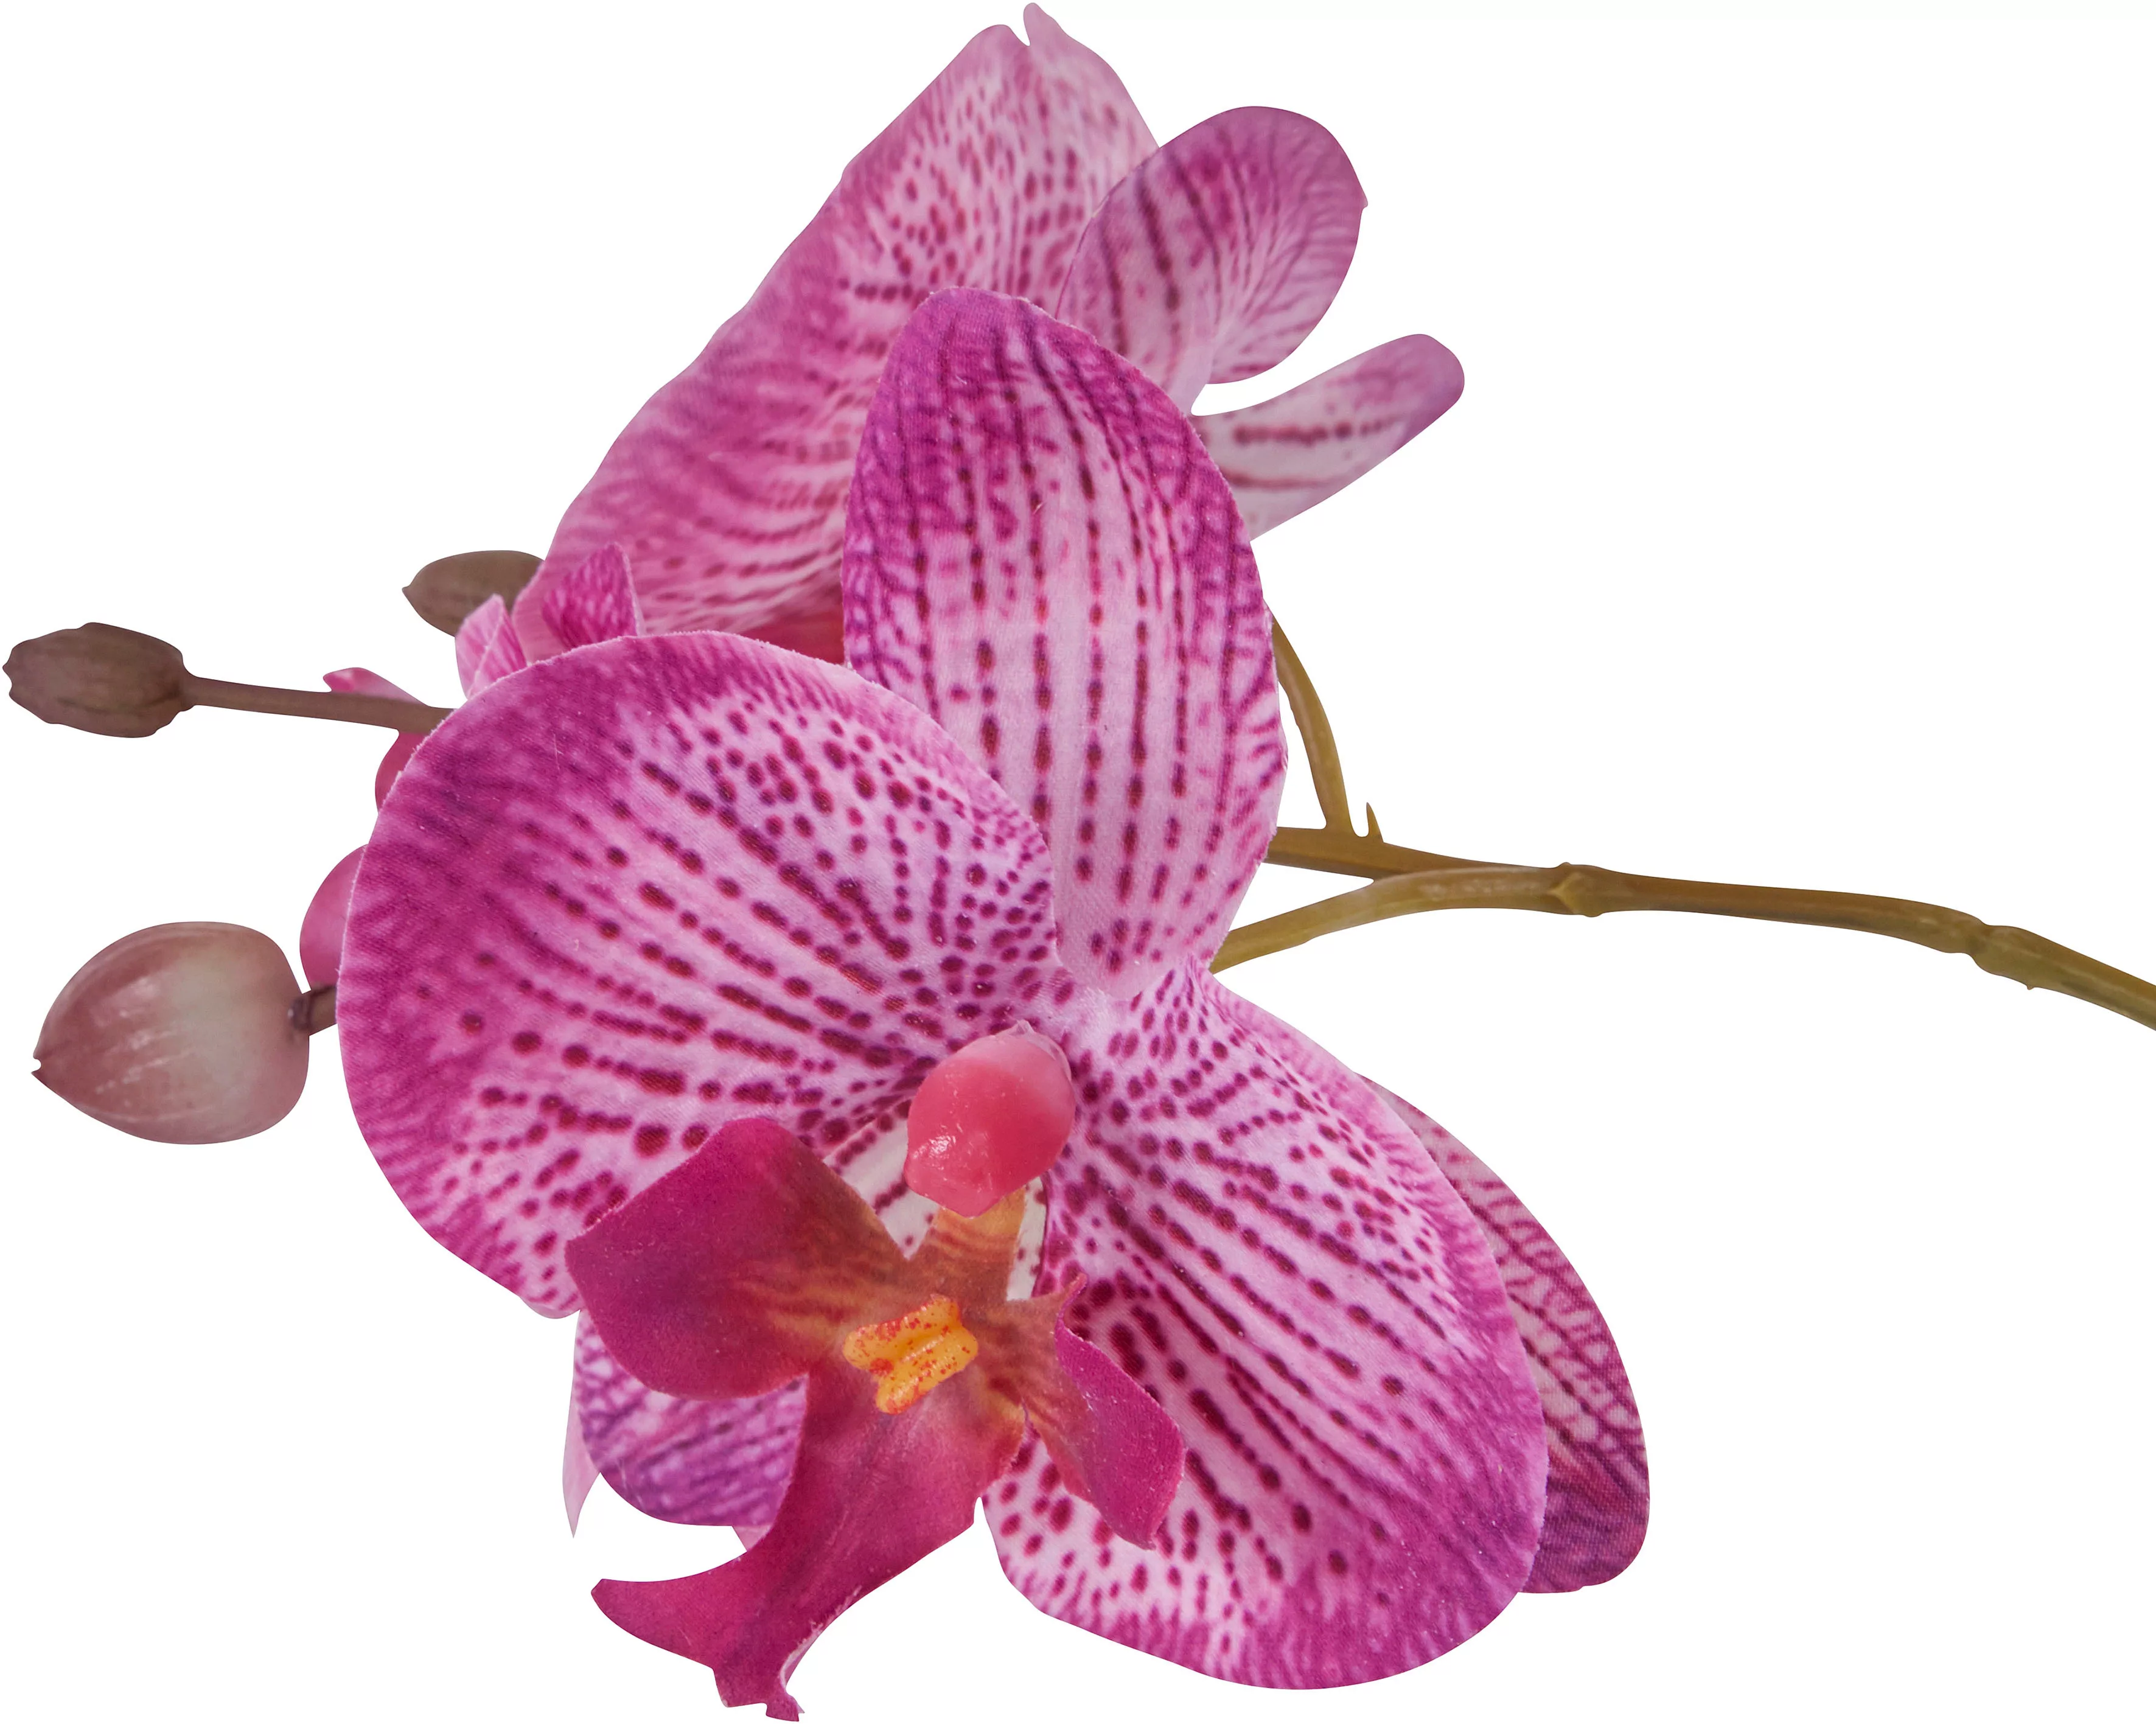 Home affaire Kunstpflanze "Orchidee", Kunstorchidee, im Topf günstig online kaufen